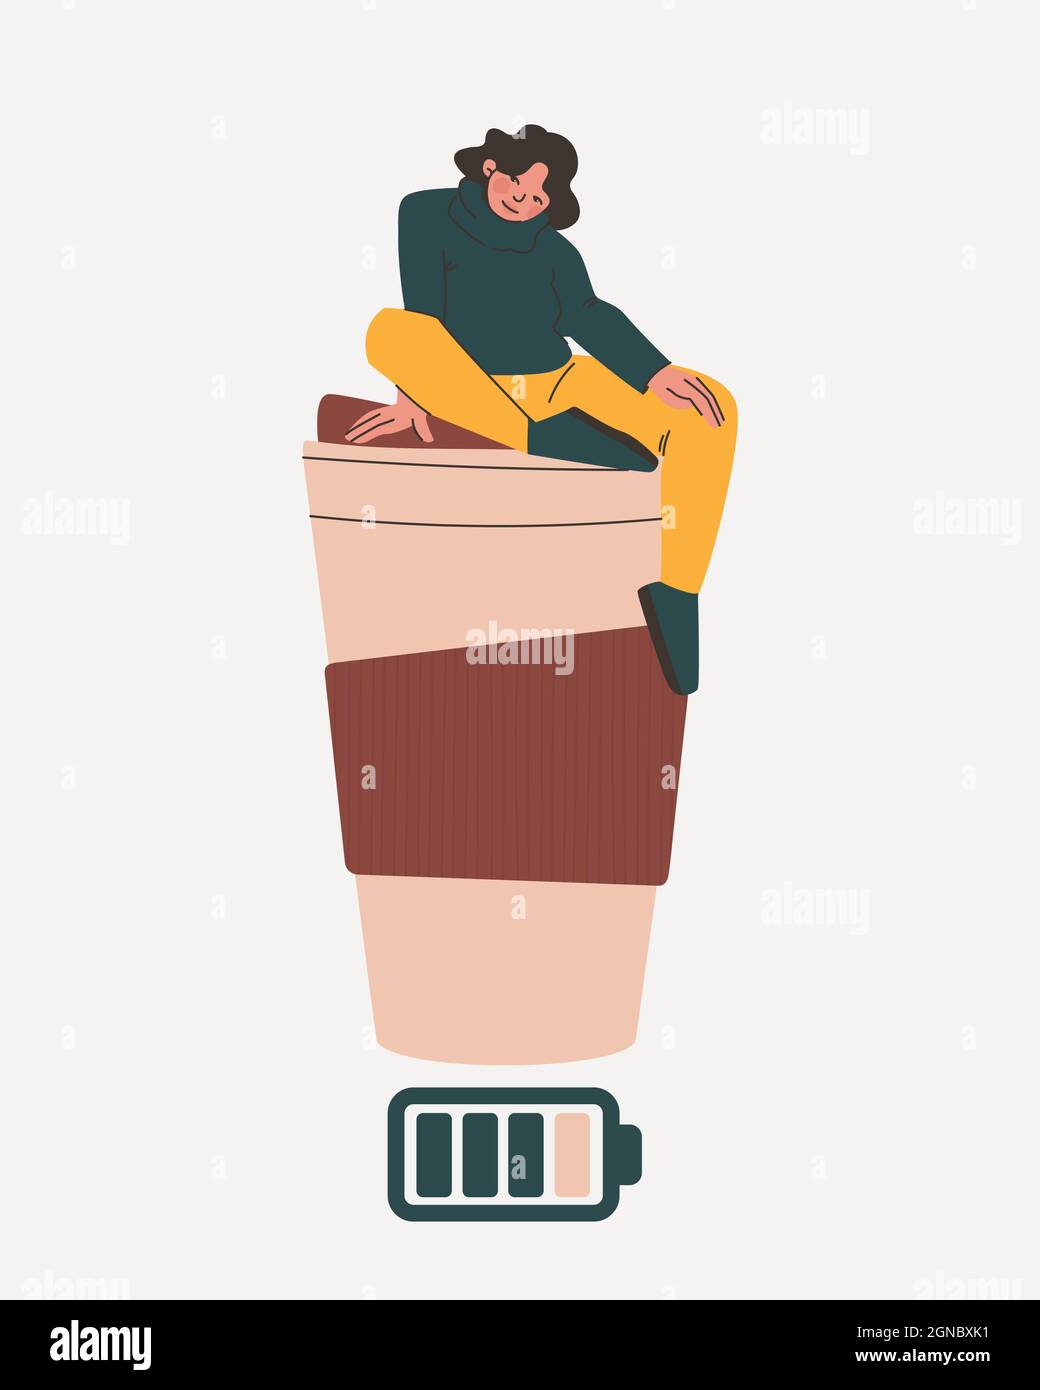 Frau sitzt auf einem großen Glas Kaffee. Symbol für Akkuladung als Symbol für Energy Drink. Stock Vektor